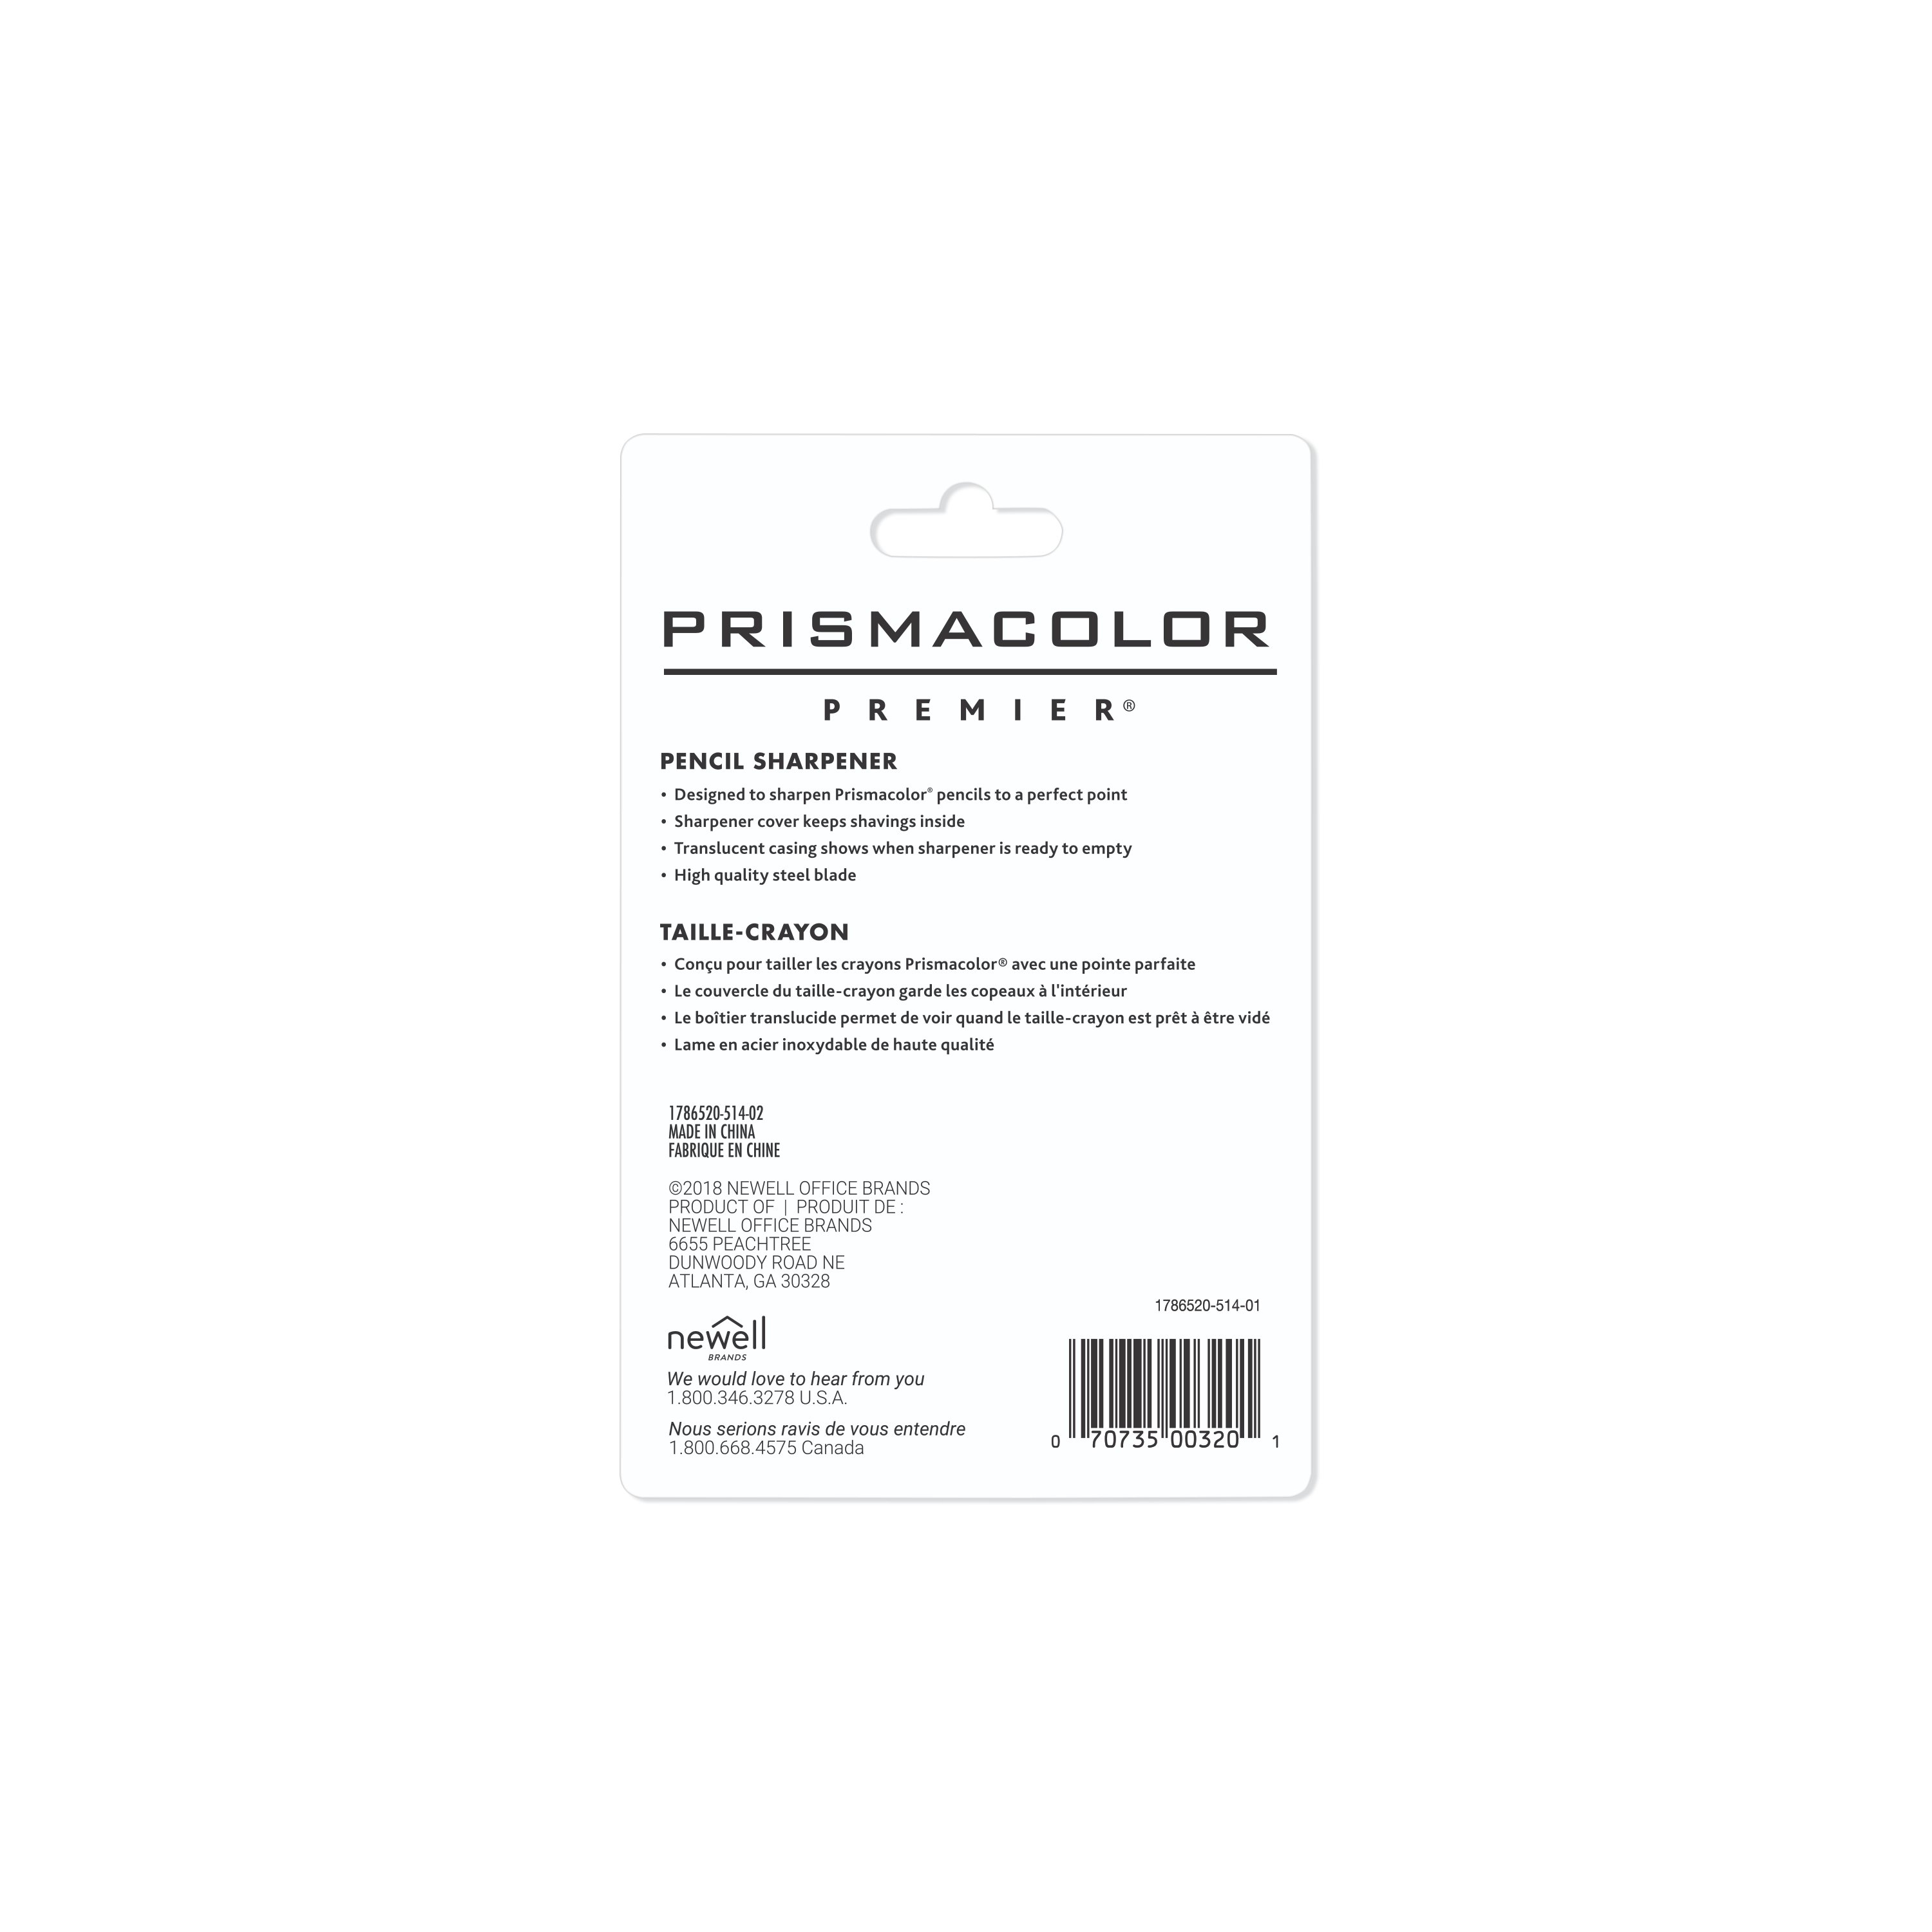 Prismacolor Oval Pencil Sharpener  Prismacolor, Pencil sharpener